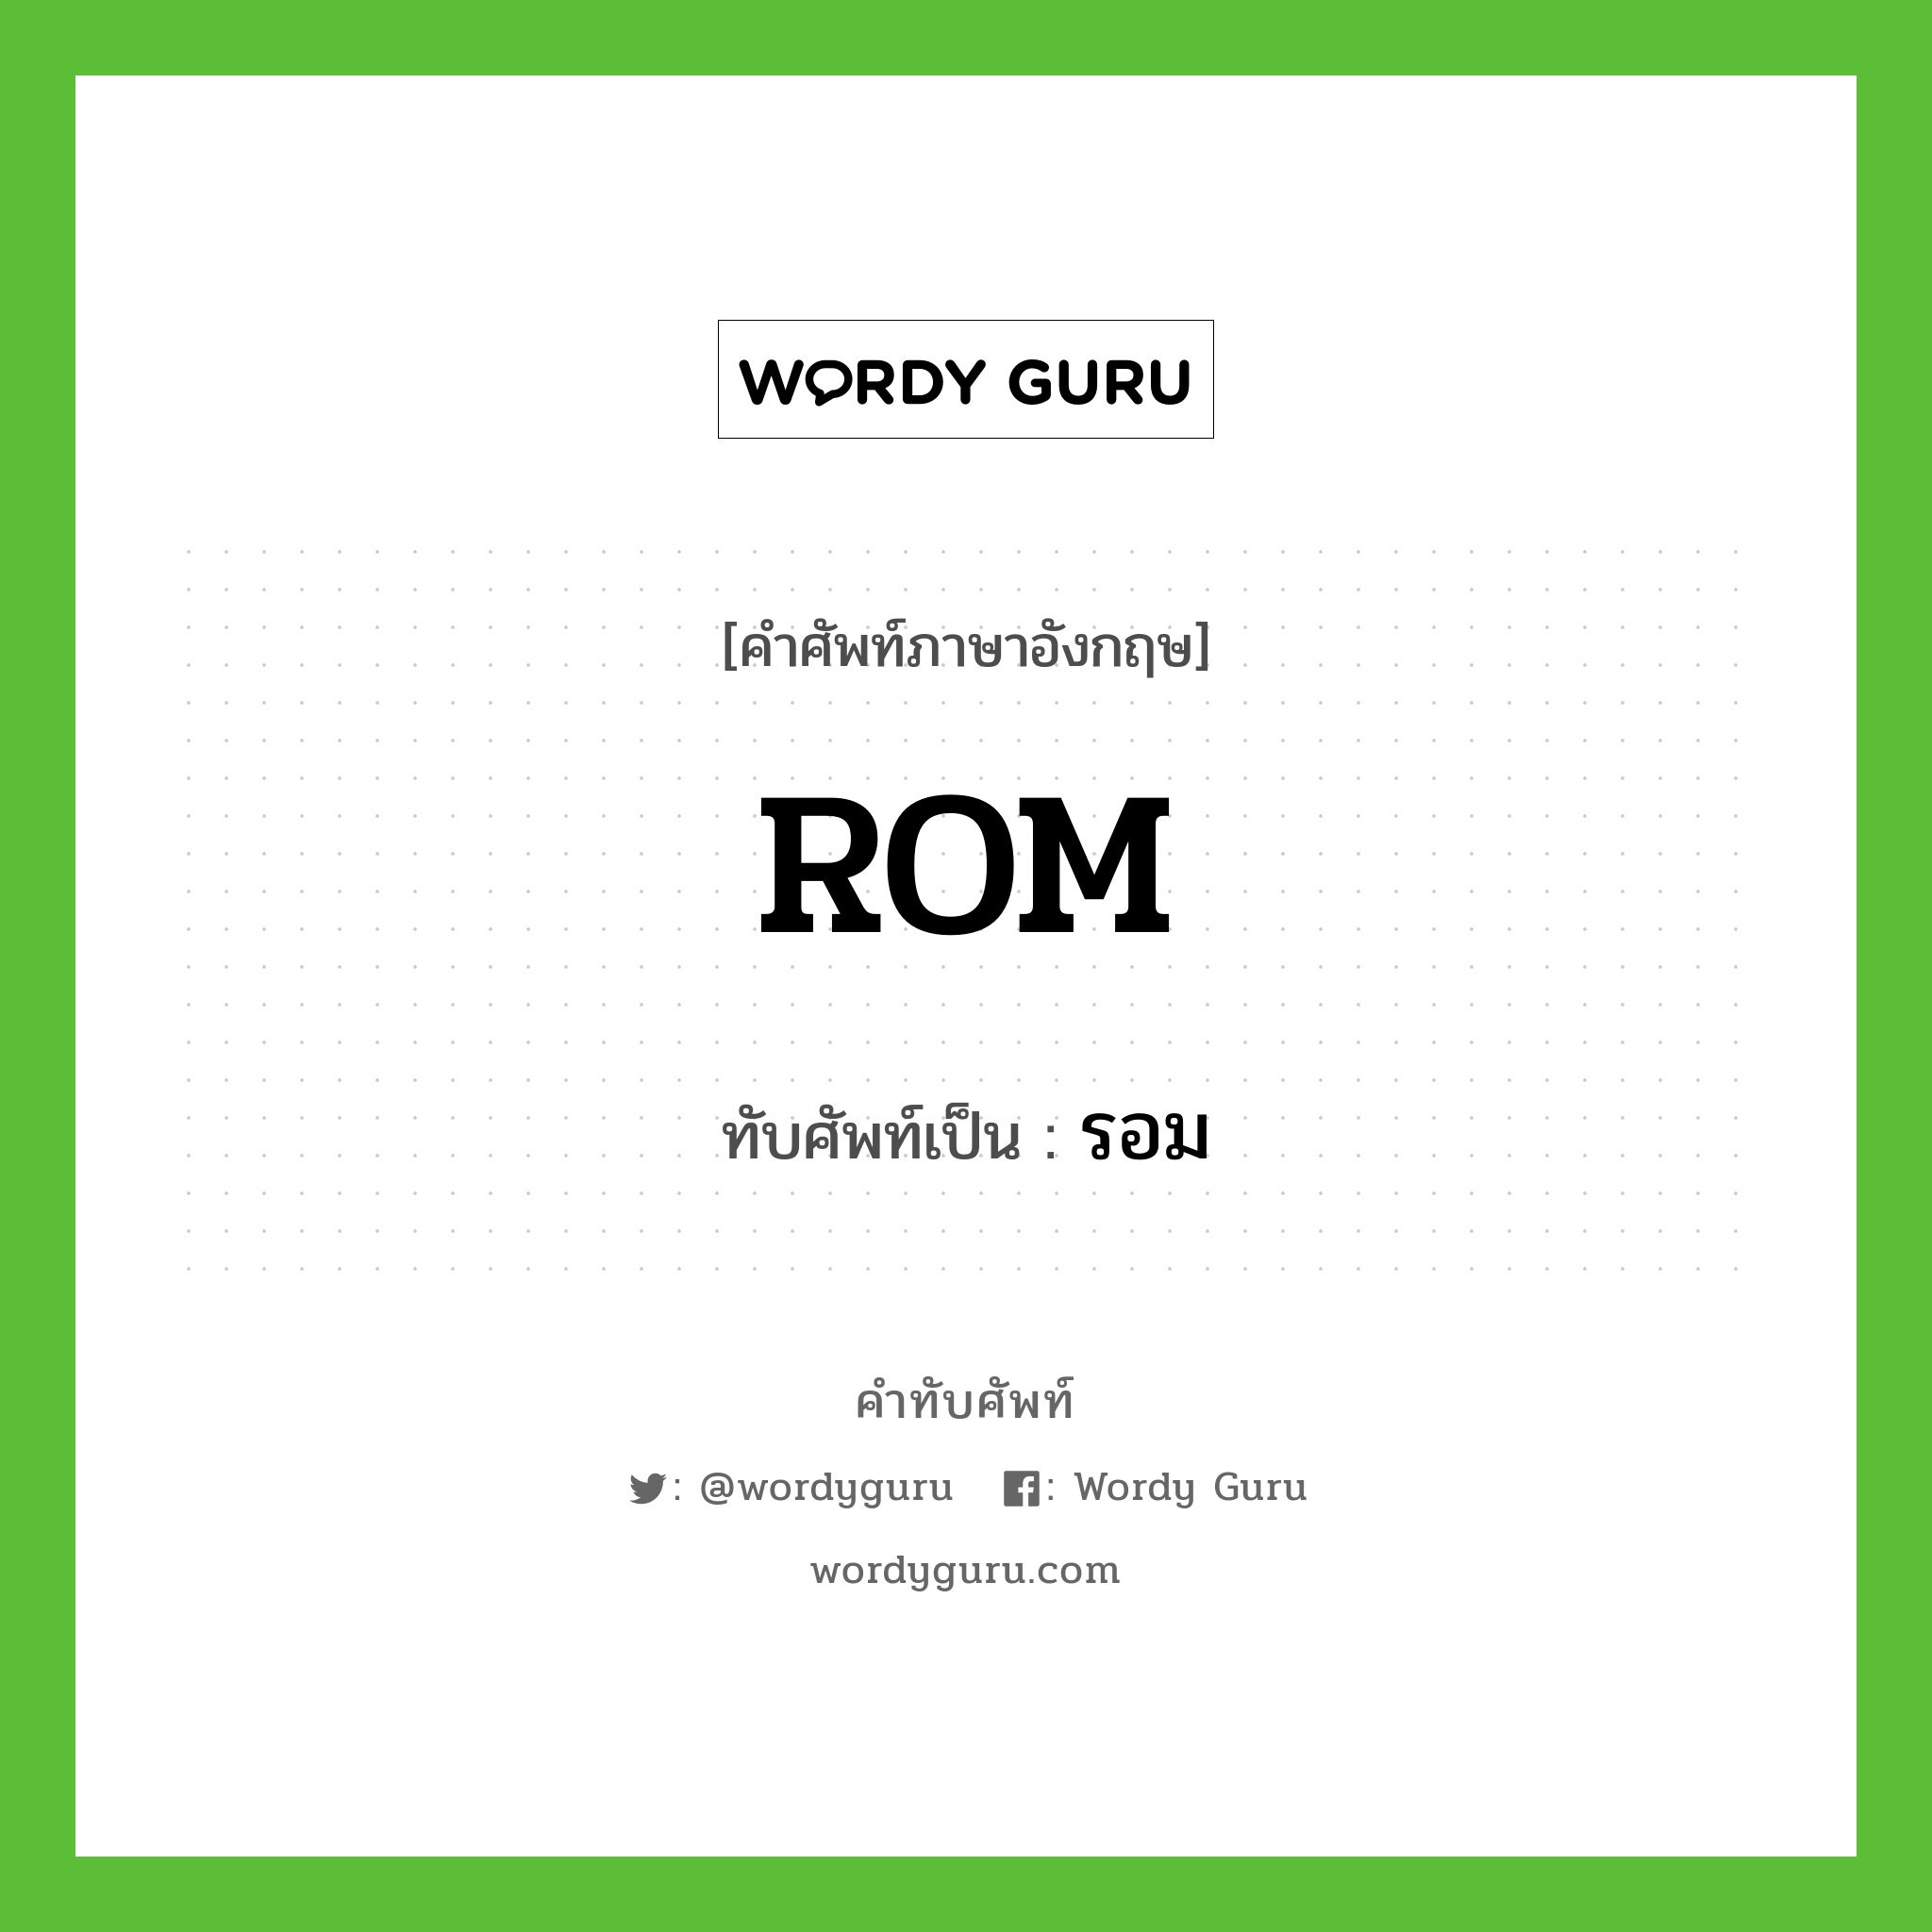 ROM เขียนเป็นคำไทยว่าอะไร?, คำศัพท์ภาษาอังกฤษ ROM ทับศัพท์เป็น รอม